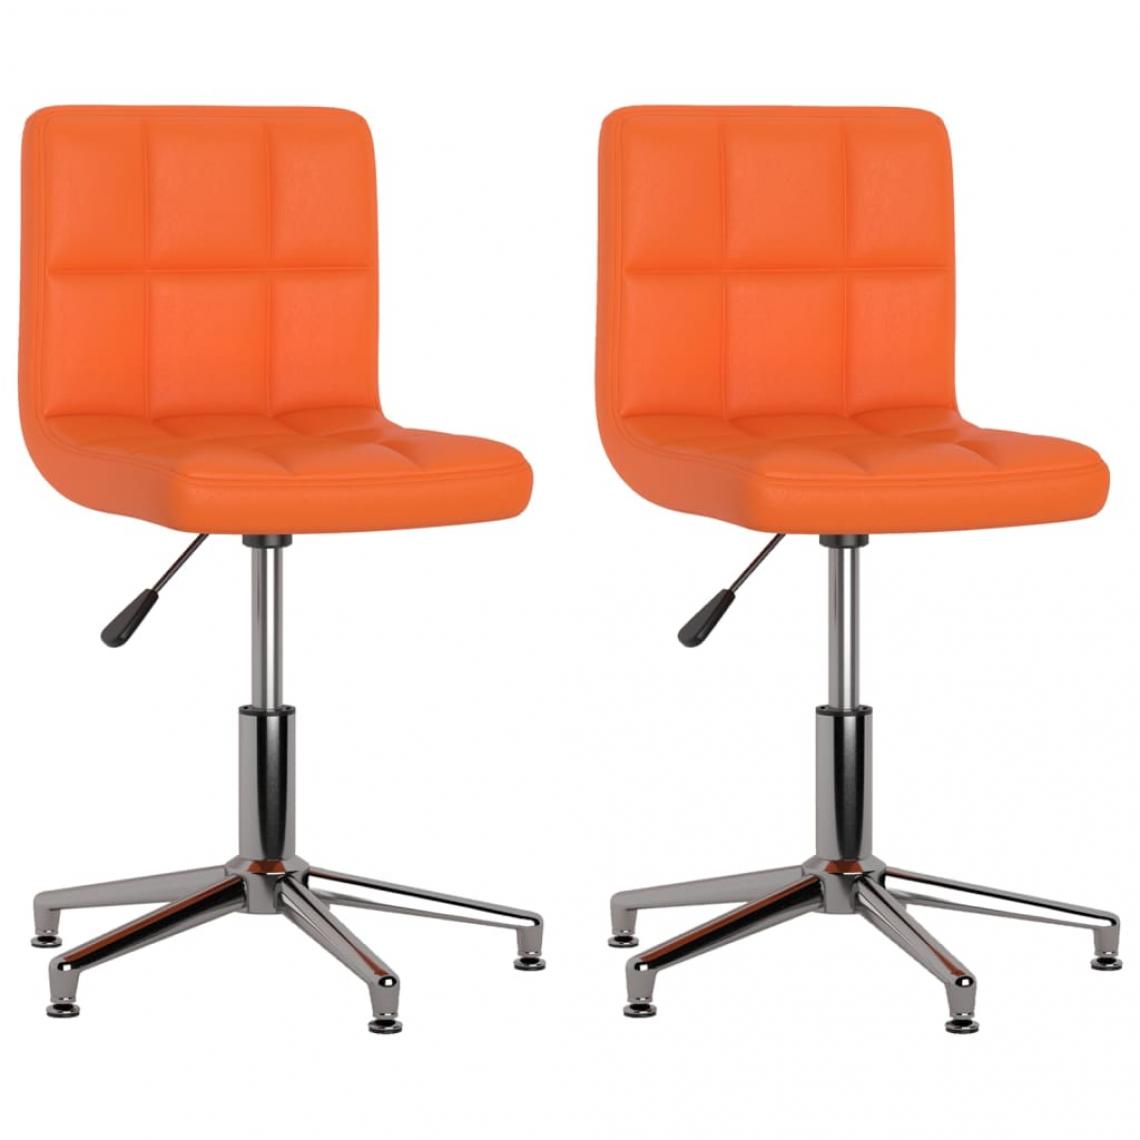 Decoshop26 - Lot de 2 chaises de salle à manger cuisine pivotantes design moderne similicuir orange CDS020931 - Chaises